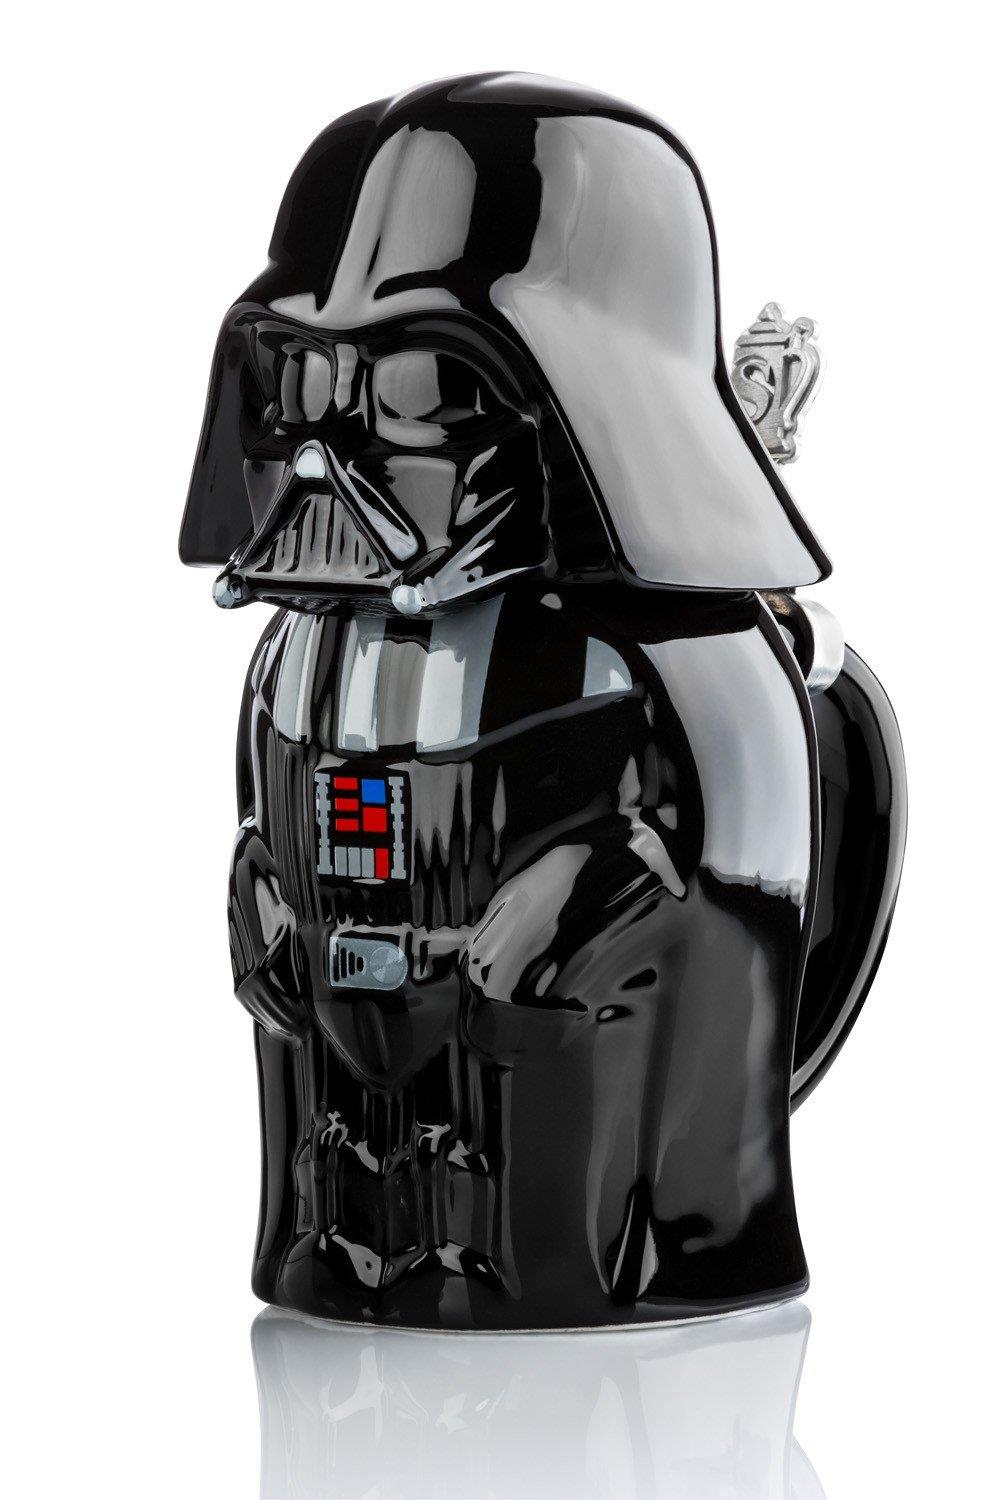 Star Wars Series 1 Signature Stein Darth Vader